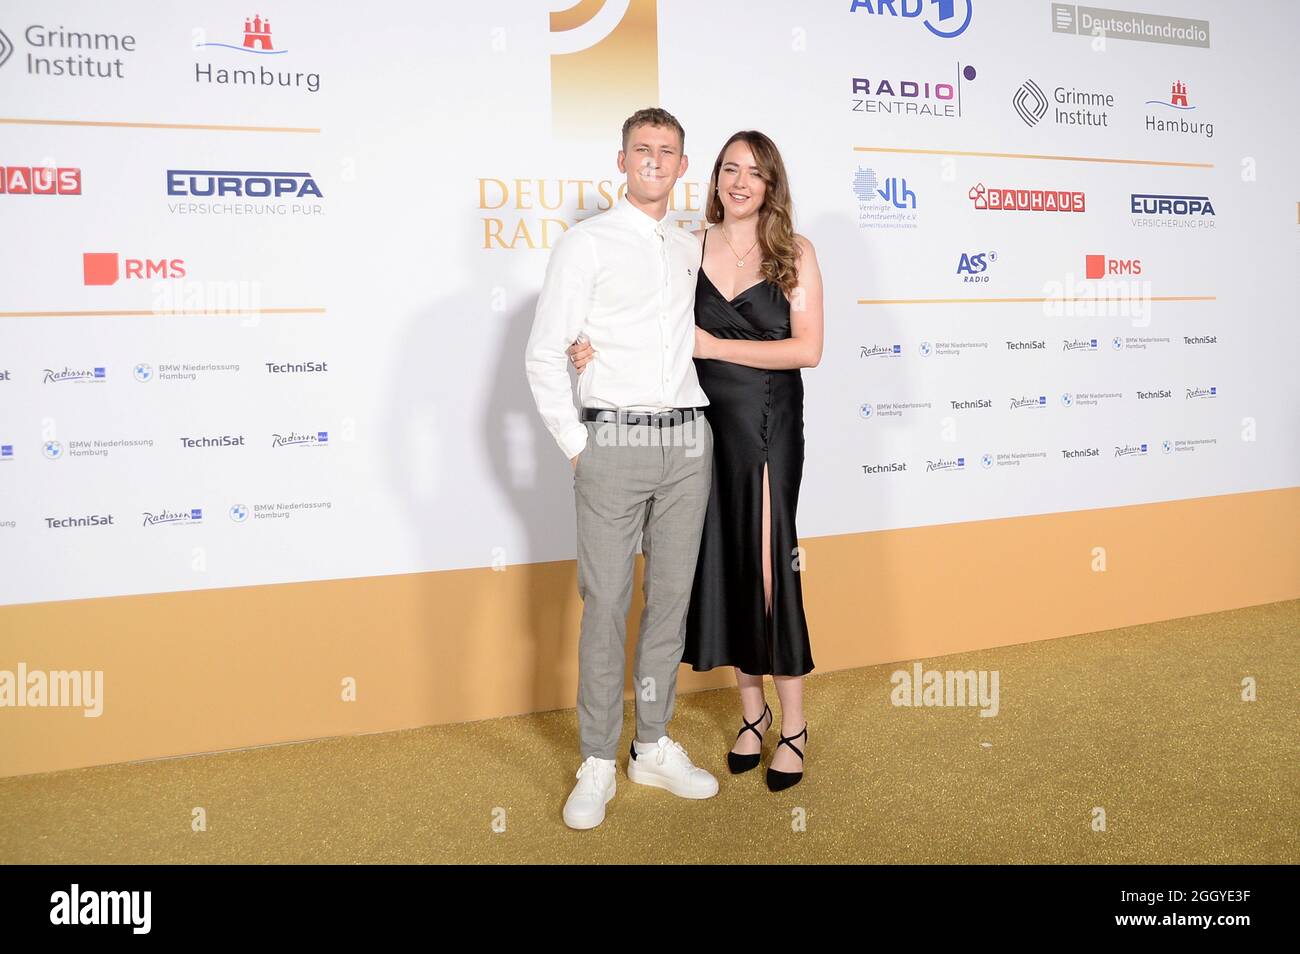 Hamburg der 02.09.2021 - Nathan Evans mit seiner Ehefrau Holly Evans bei der Verleihung des Deutschen Radiopreises 2021 in Hamburg auf dem goldenen Teppich. Stockfoto